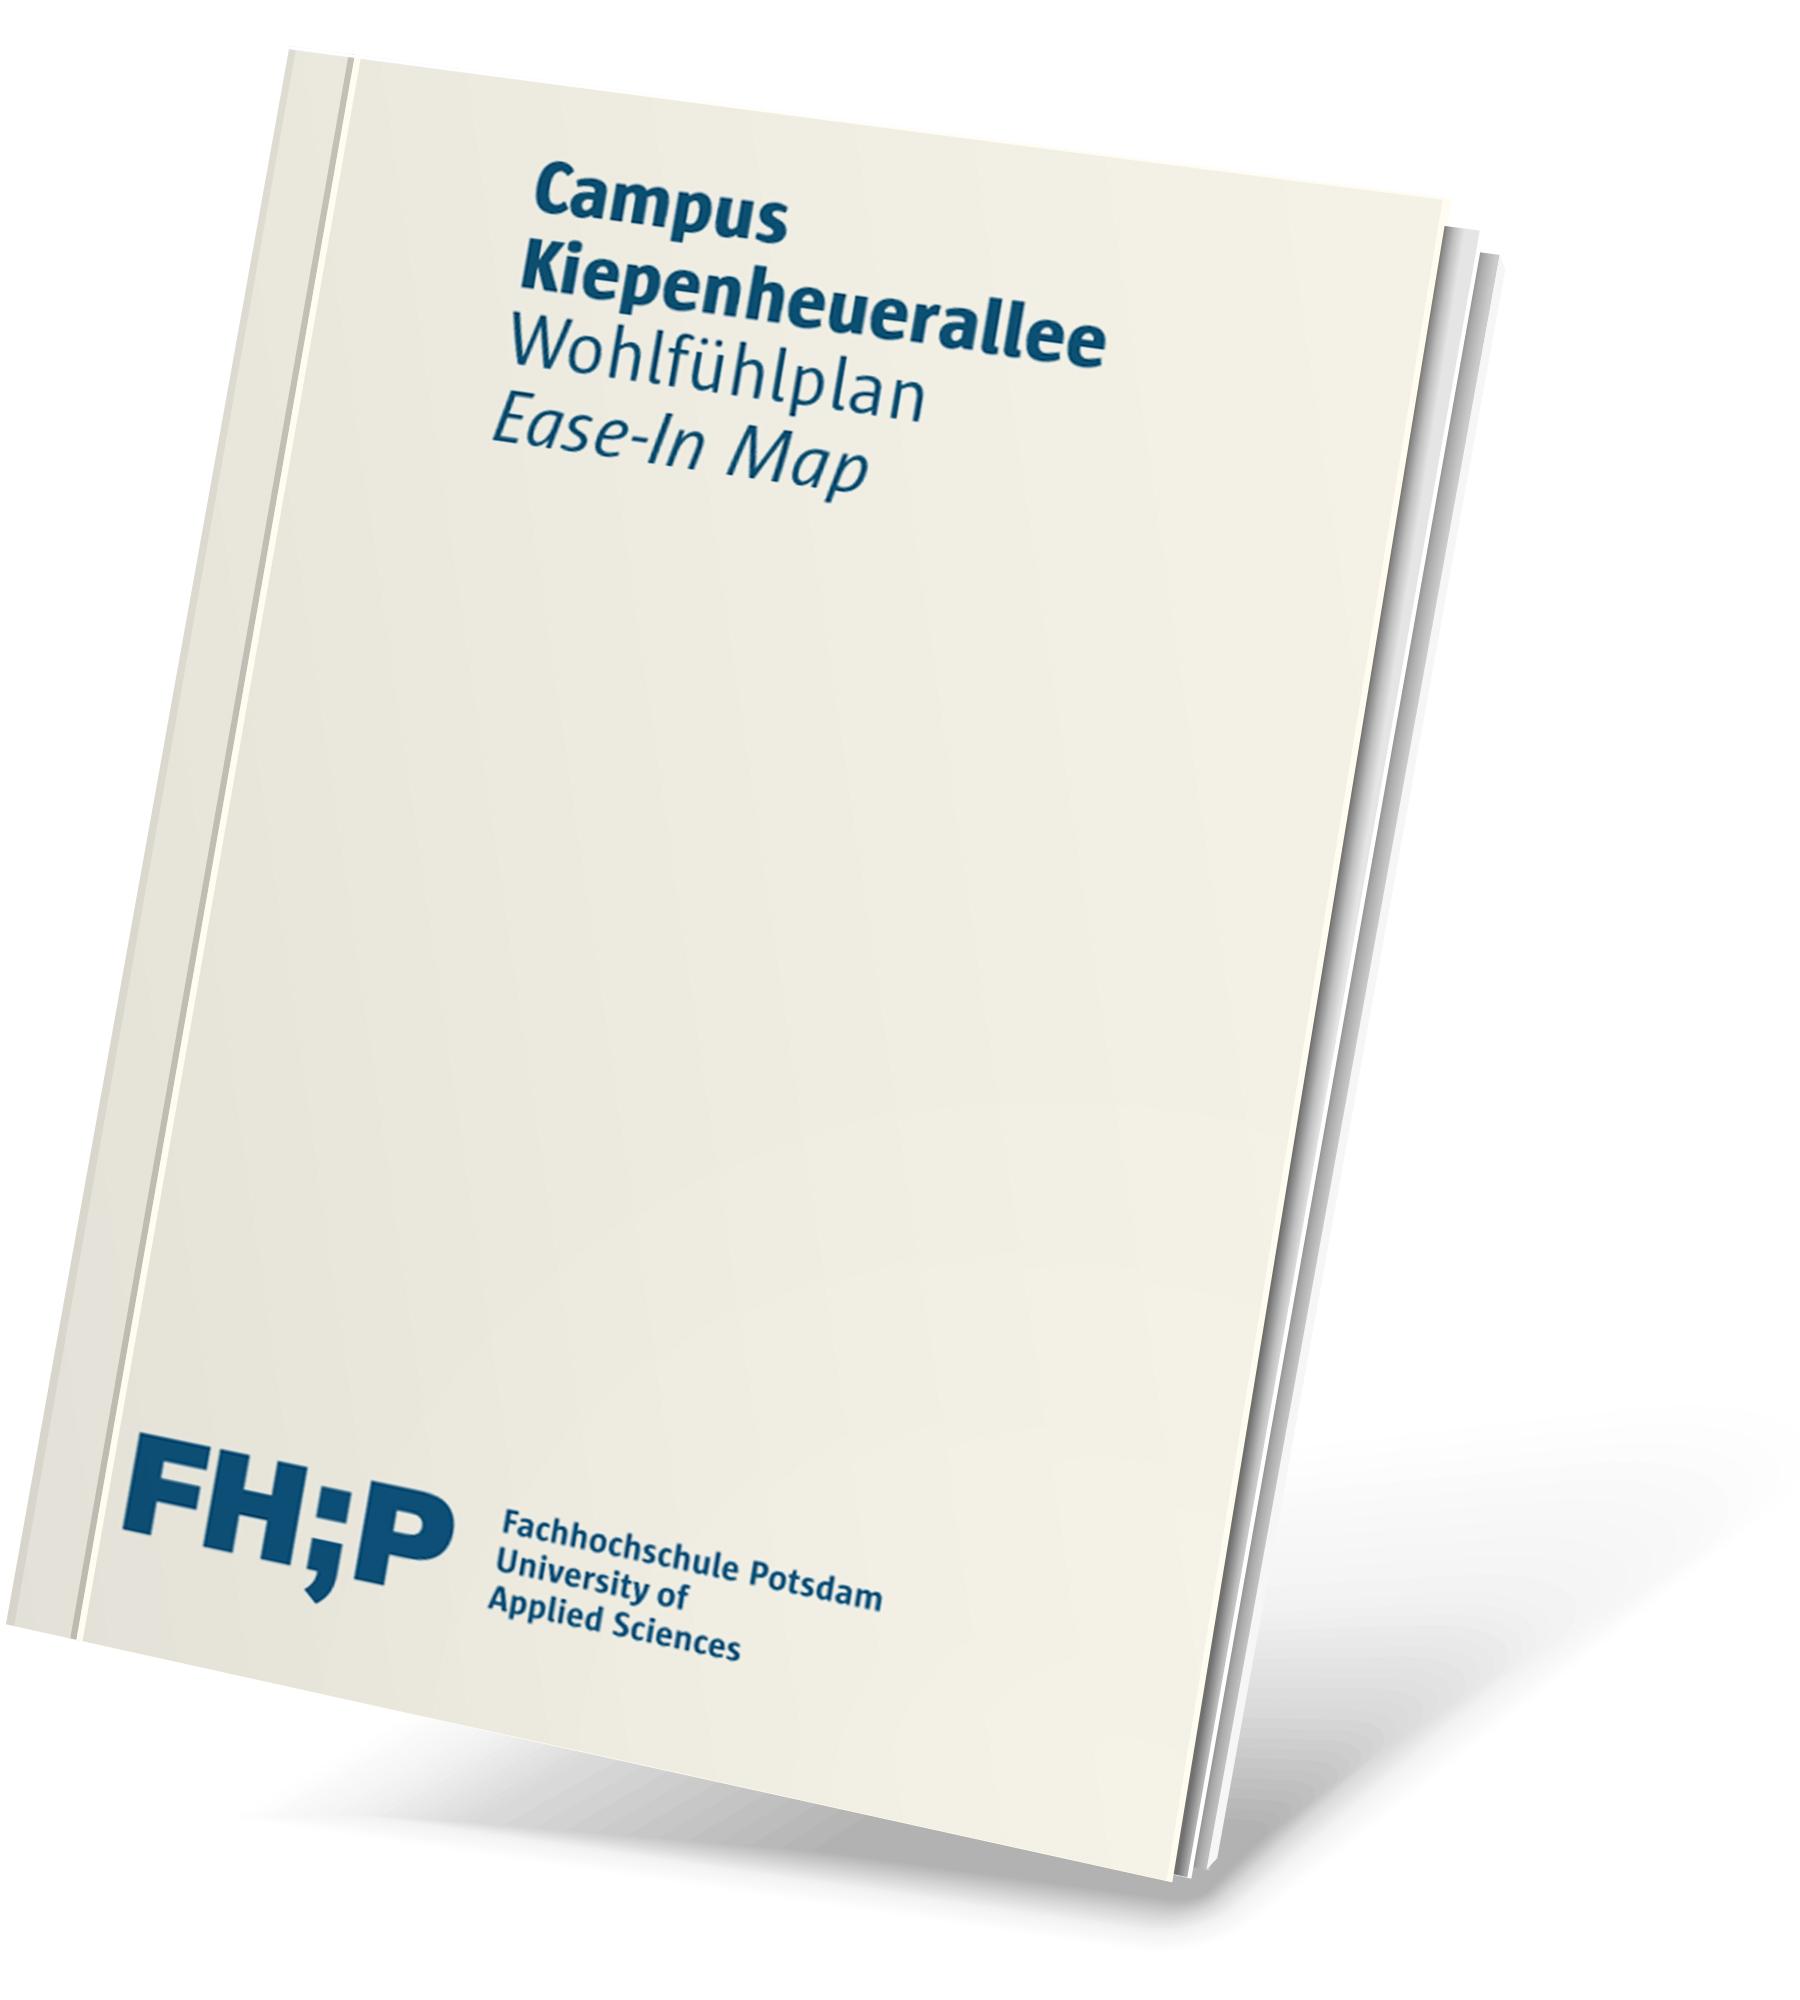 Cover mit der Aufschrift "Campus Kiepenheuerallee, Wohlfhlplan"